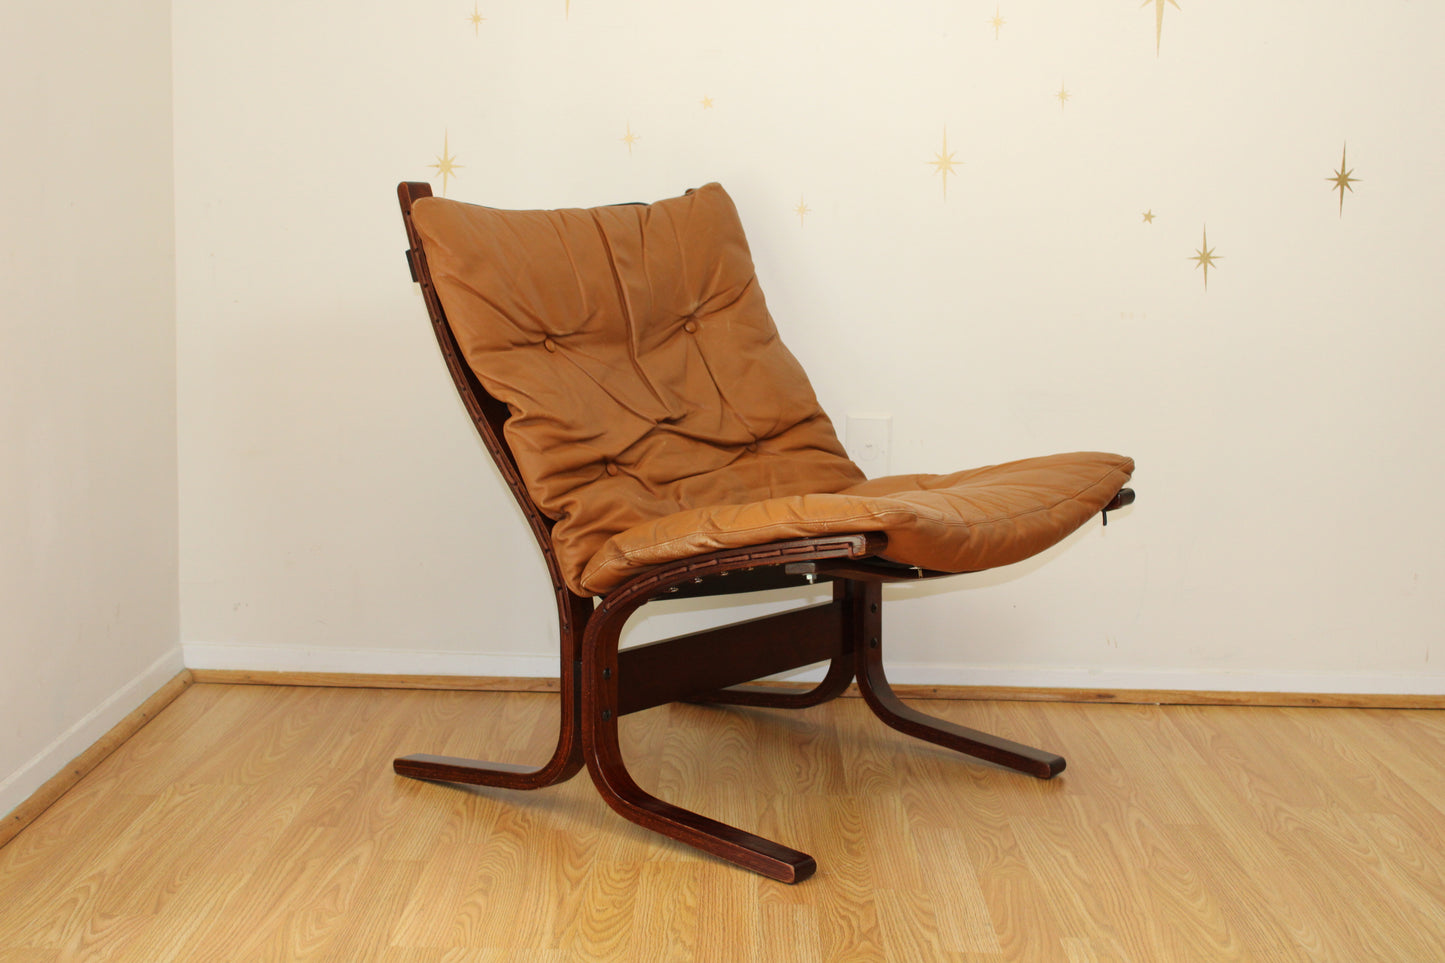 Westnofa Ingmar Relling Siesta Chair